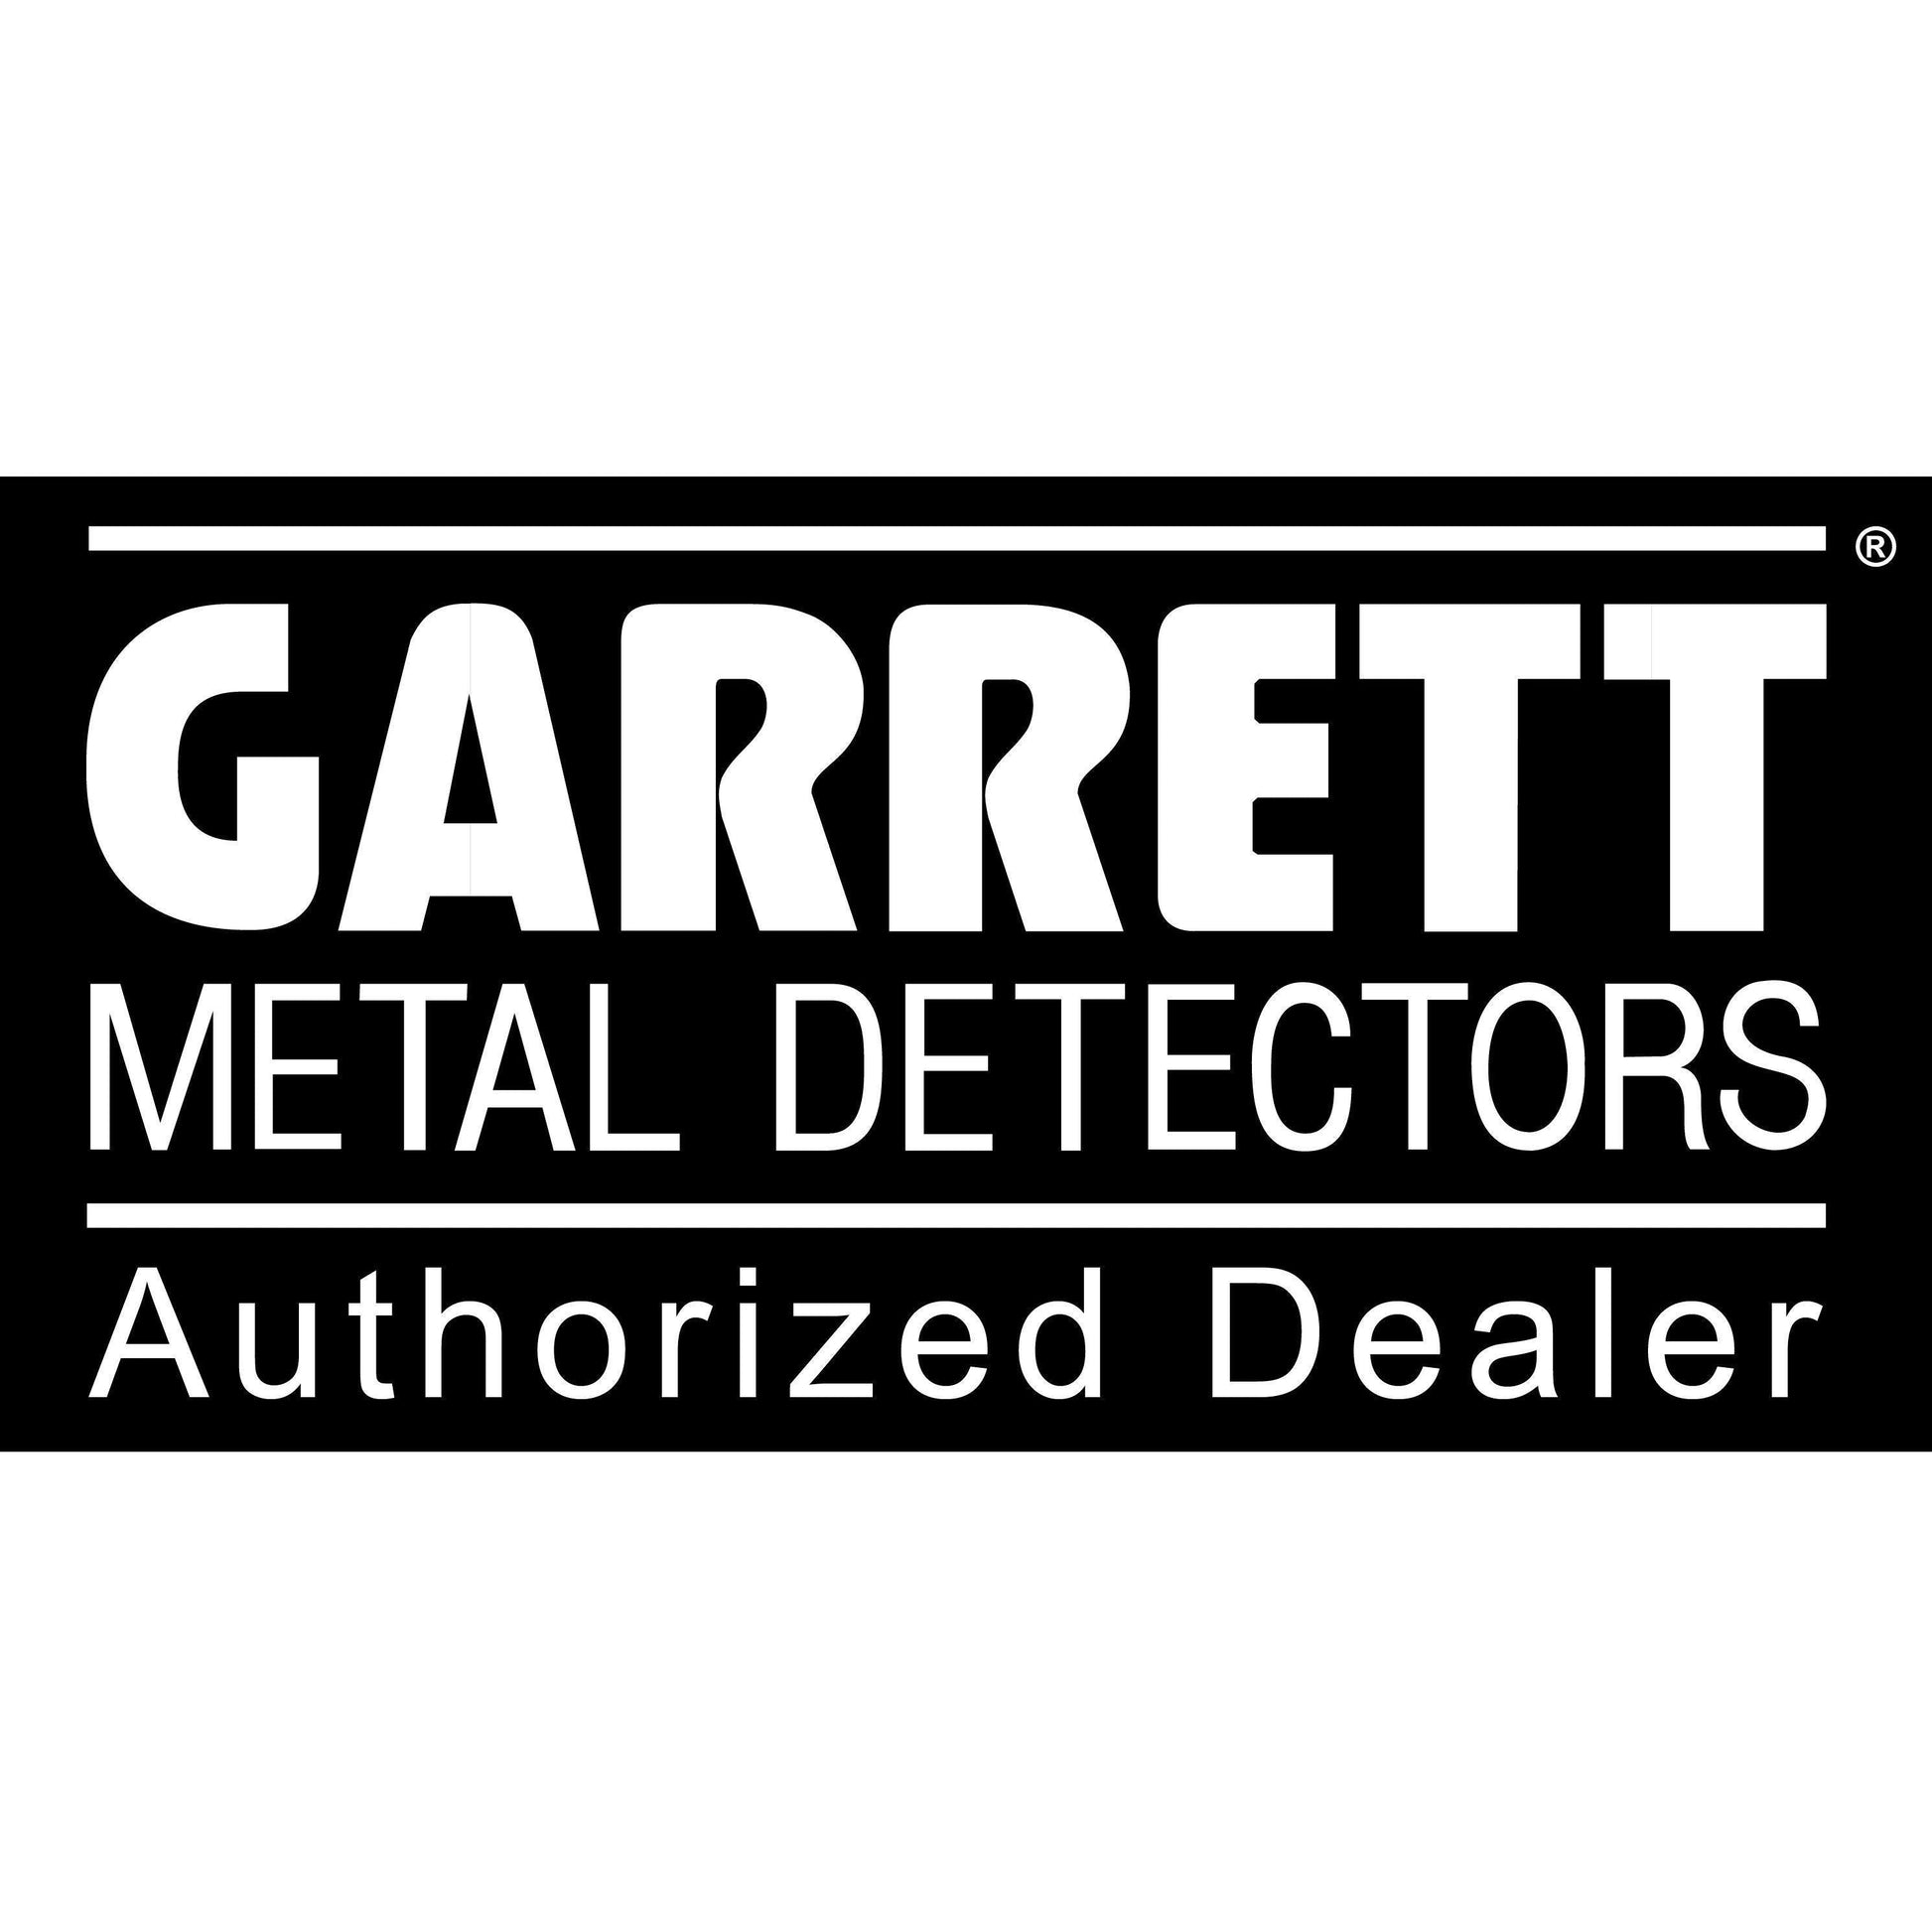 Garrett "EST '64" Cap-Destination Gold Detectors